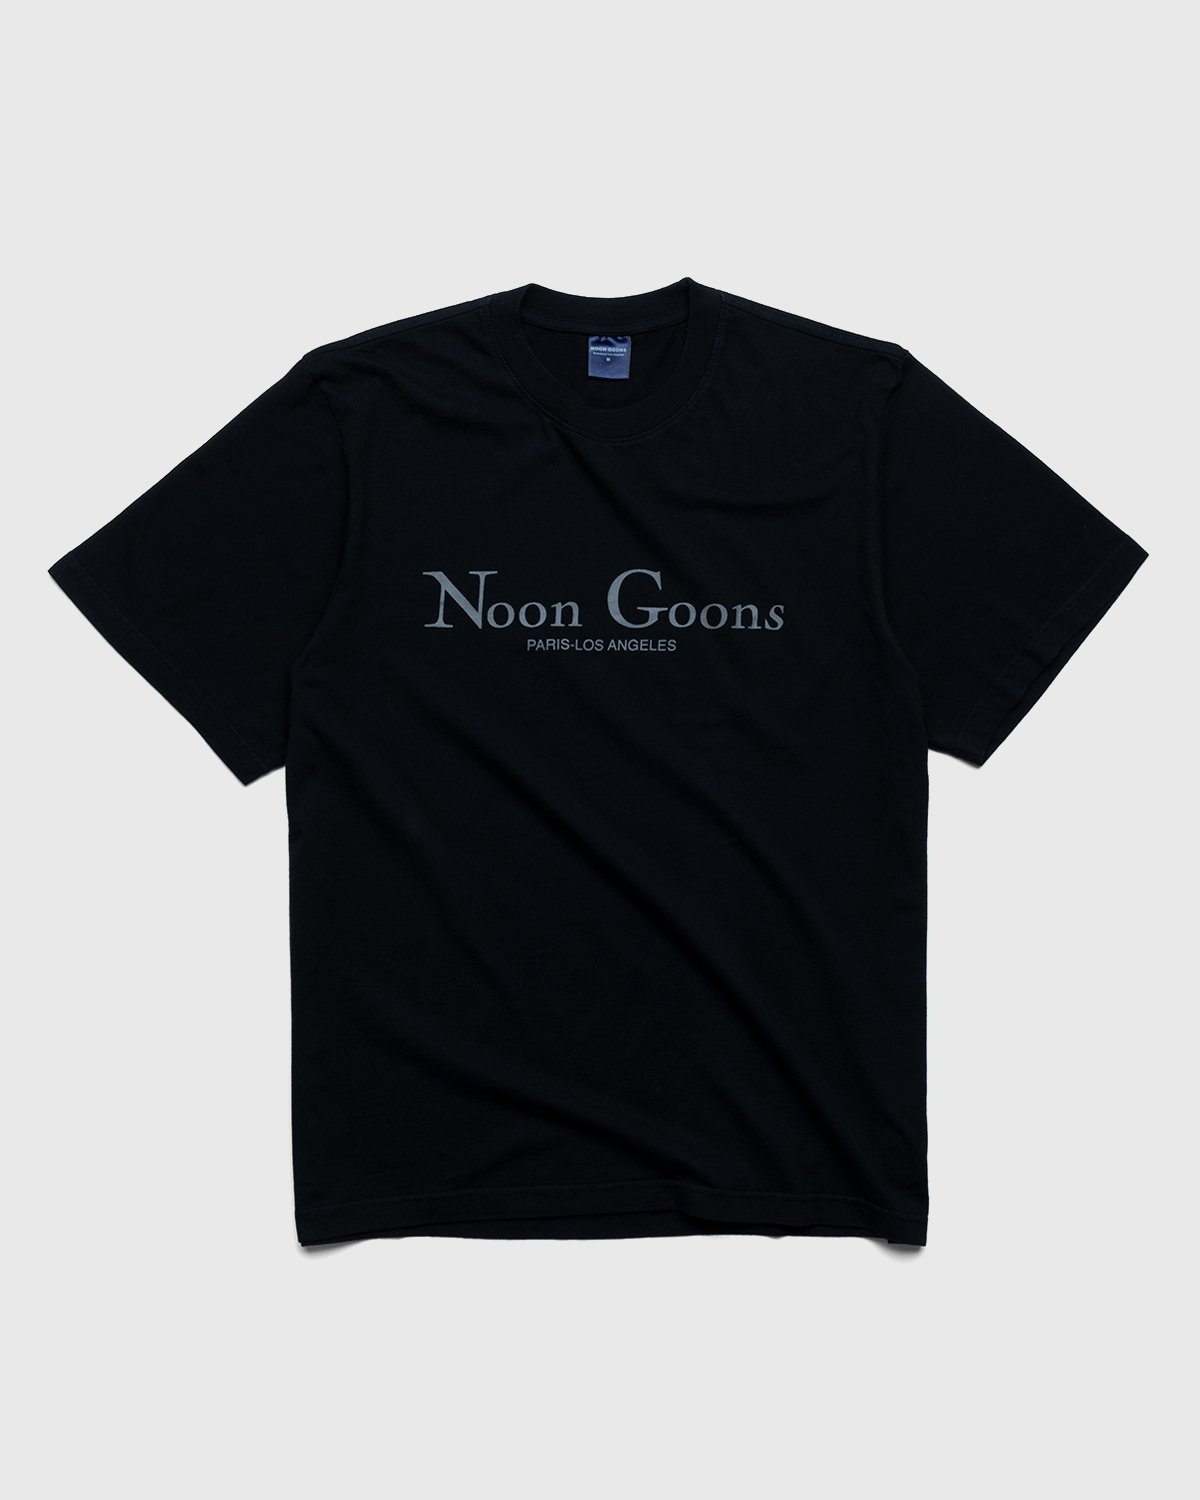 Noon Goons – Sister City T-Shirt Black - Tops - Black - Image 1